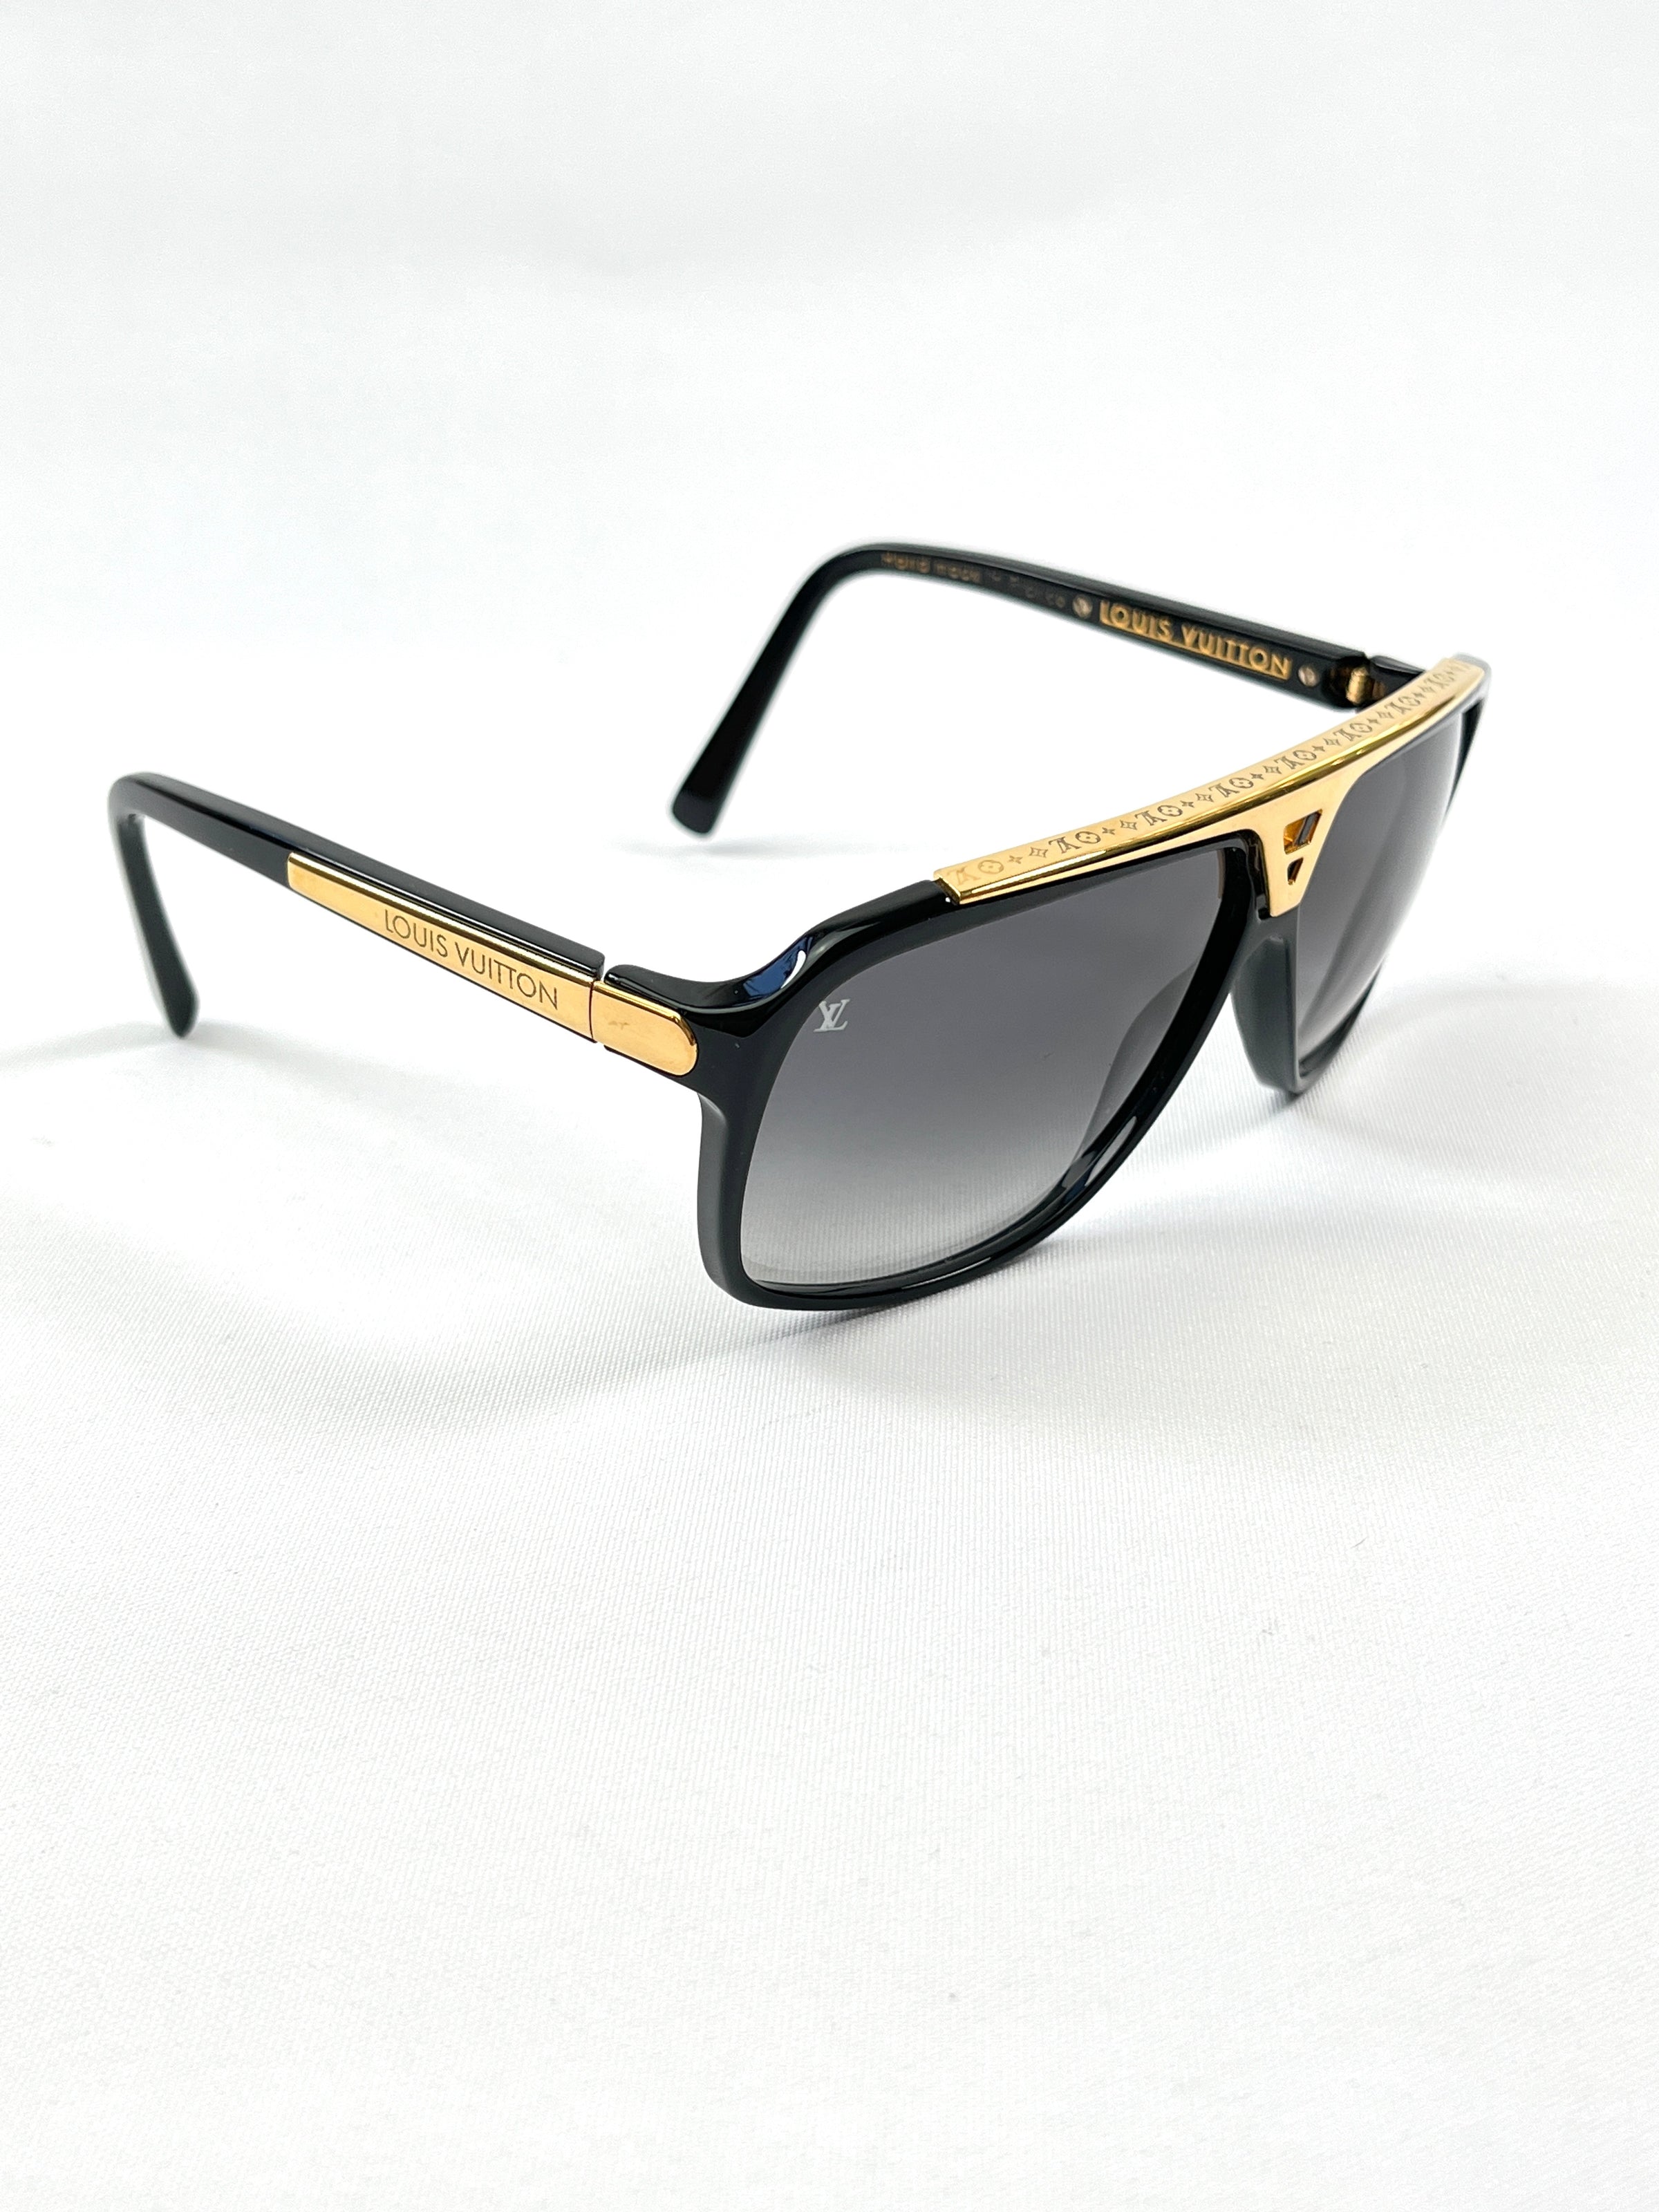 Louis Vuitton, Accessories, Louis Vuitton Evidence Millionaire Sunglasses